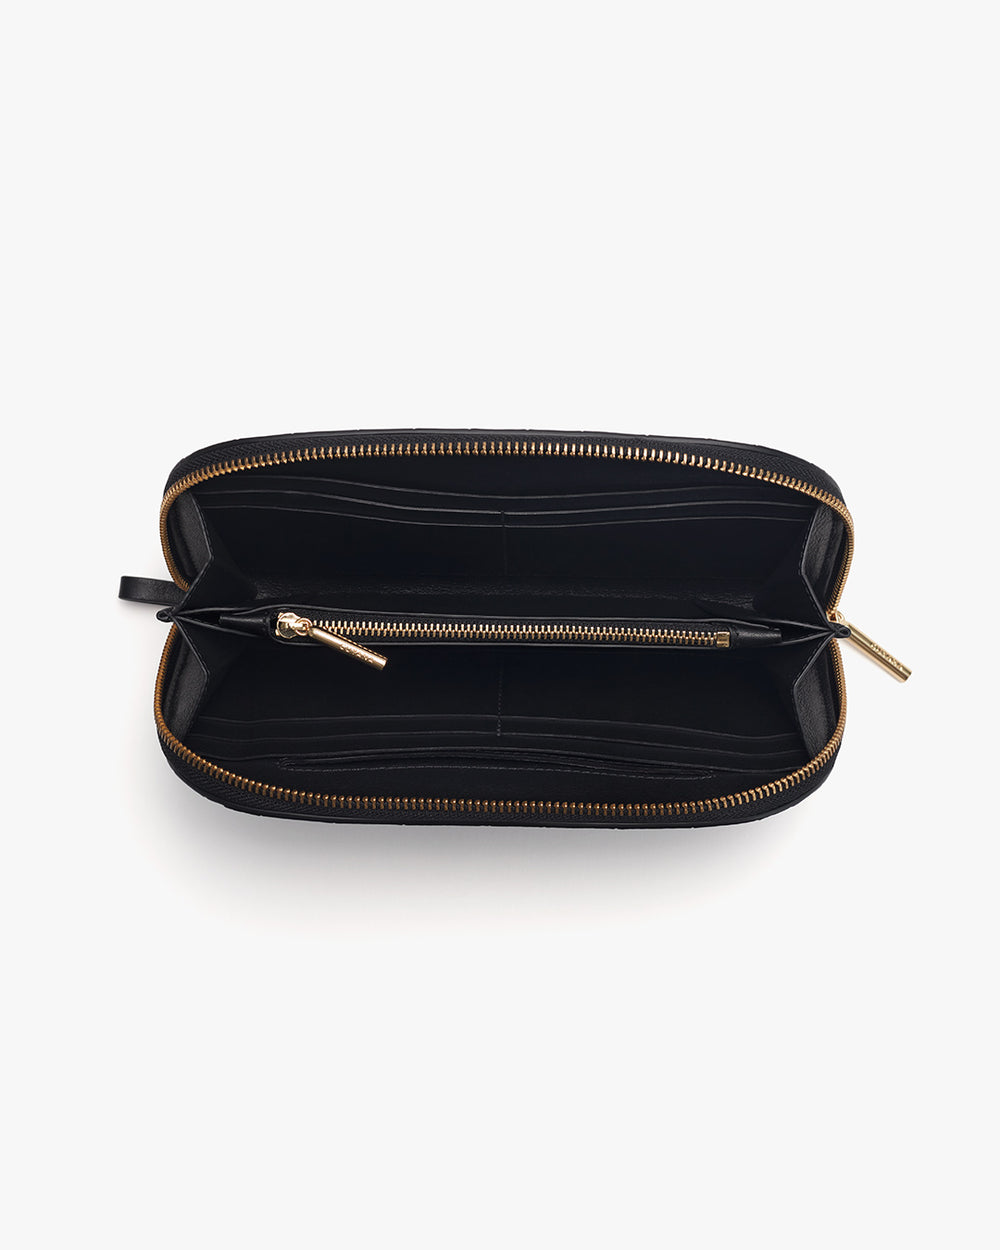 Open rectangular zippered pouch with an interior zipper compartment.